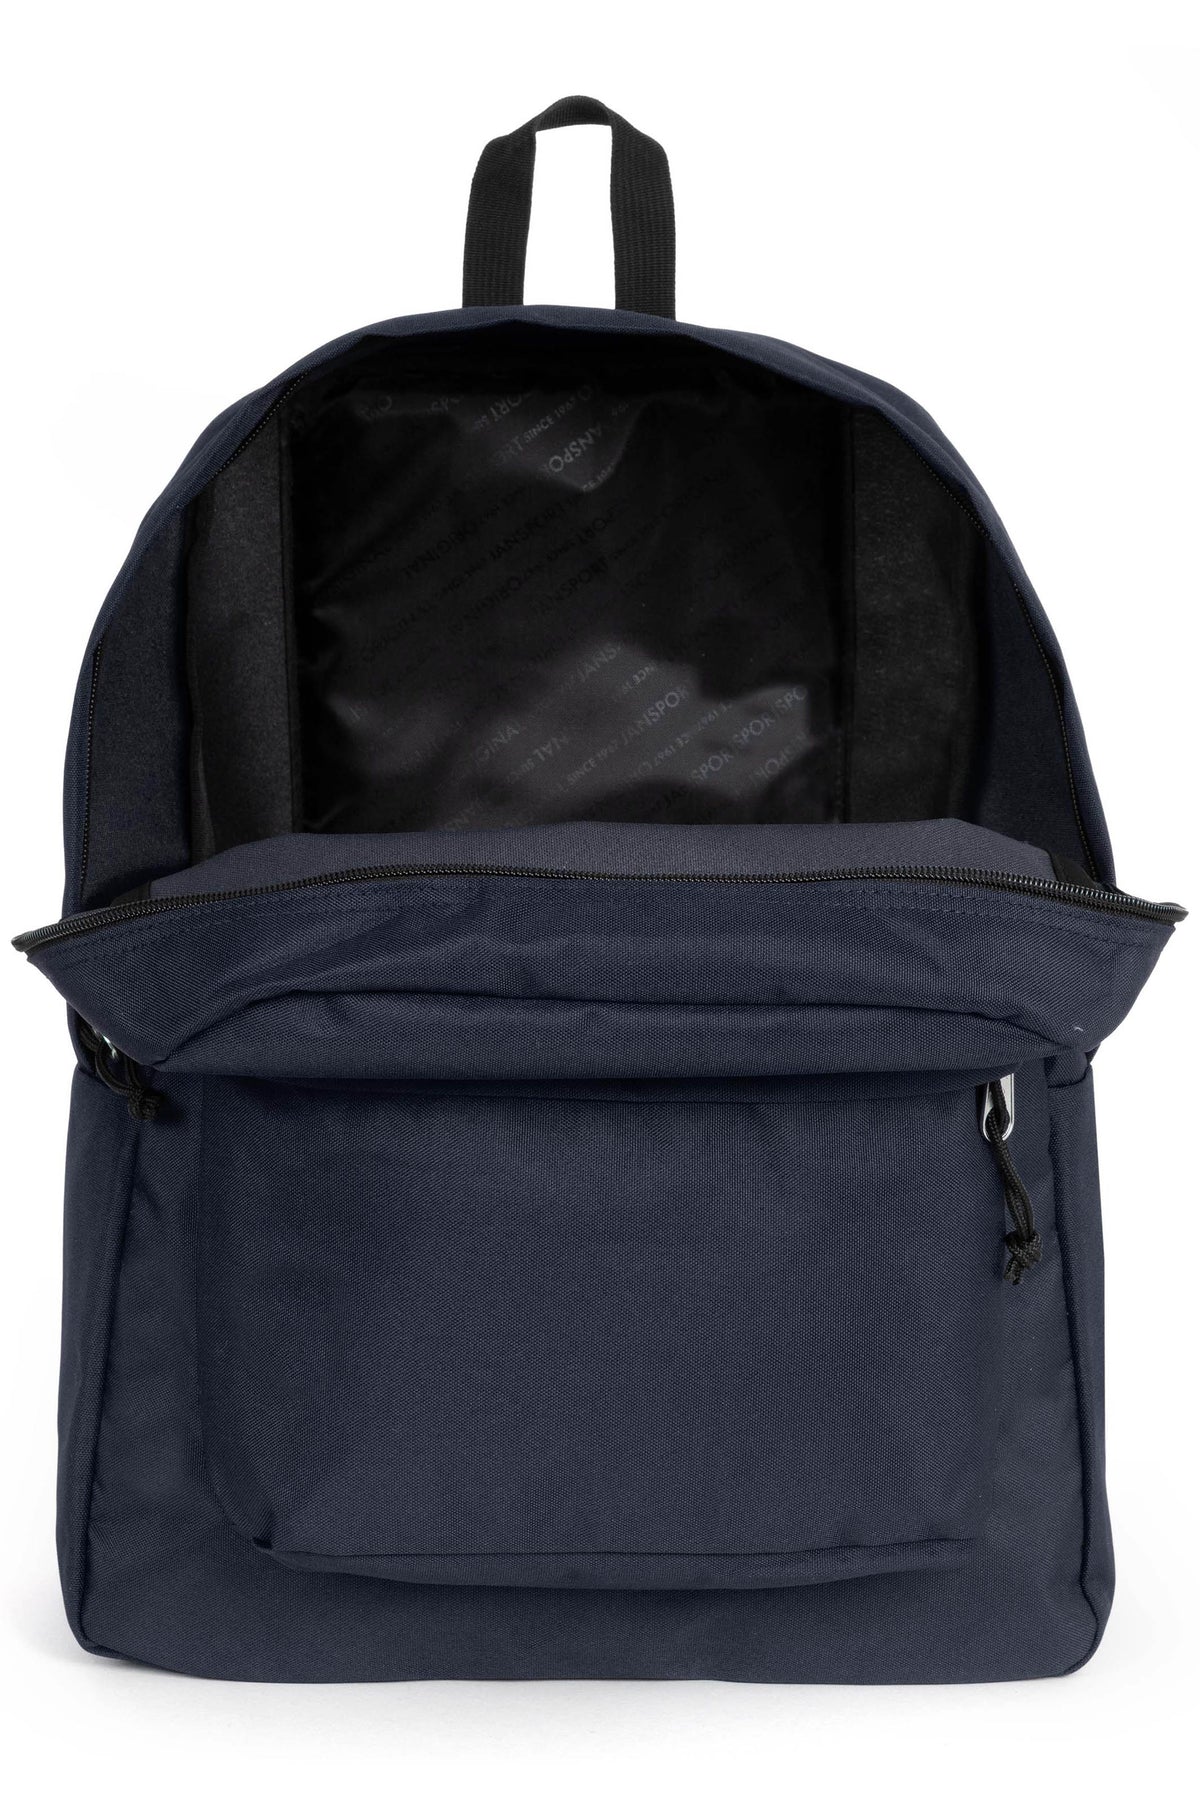 Jansport Superbreak One Backpack - Navy